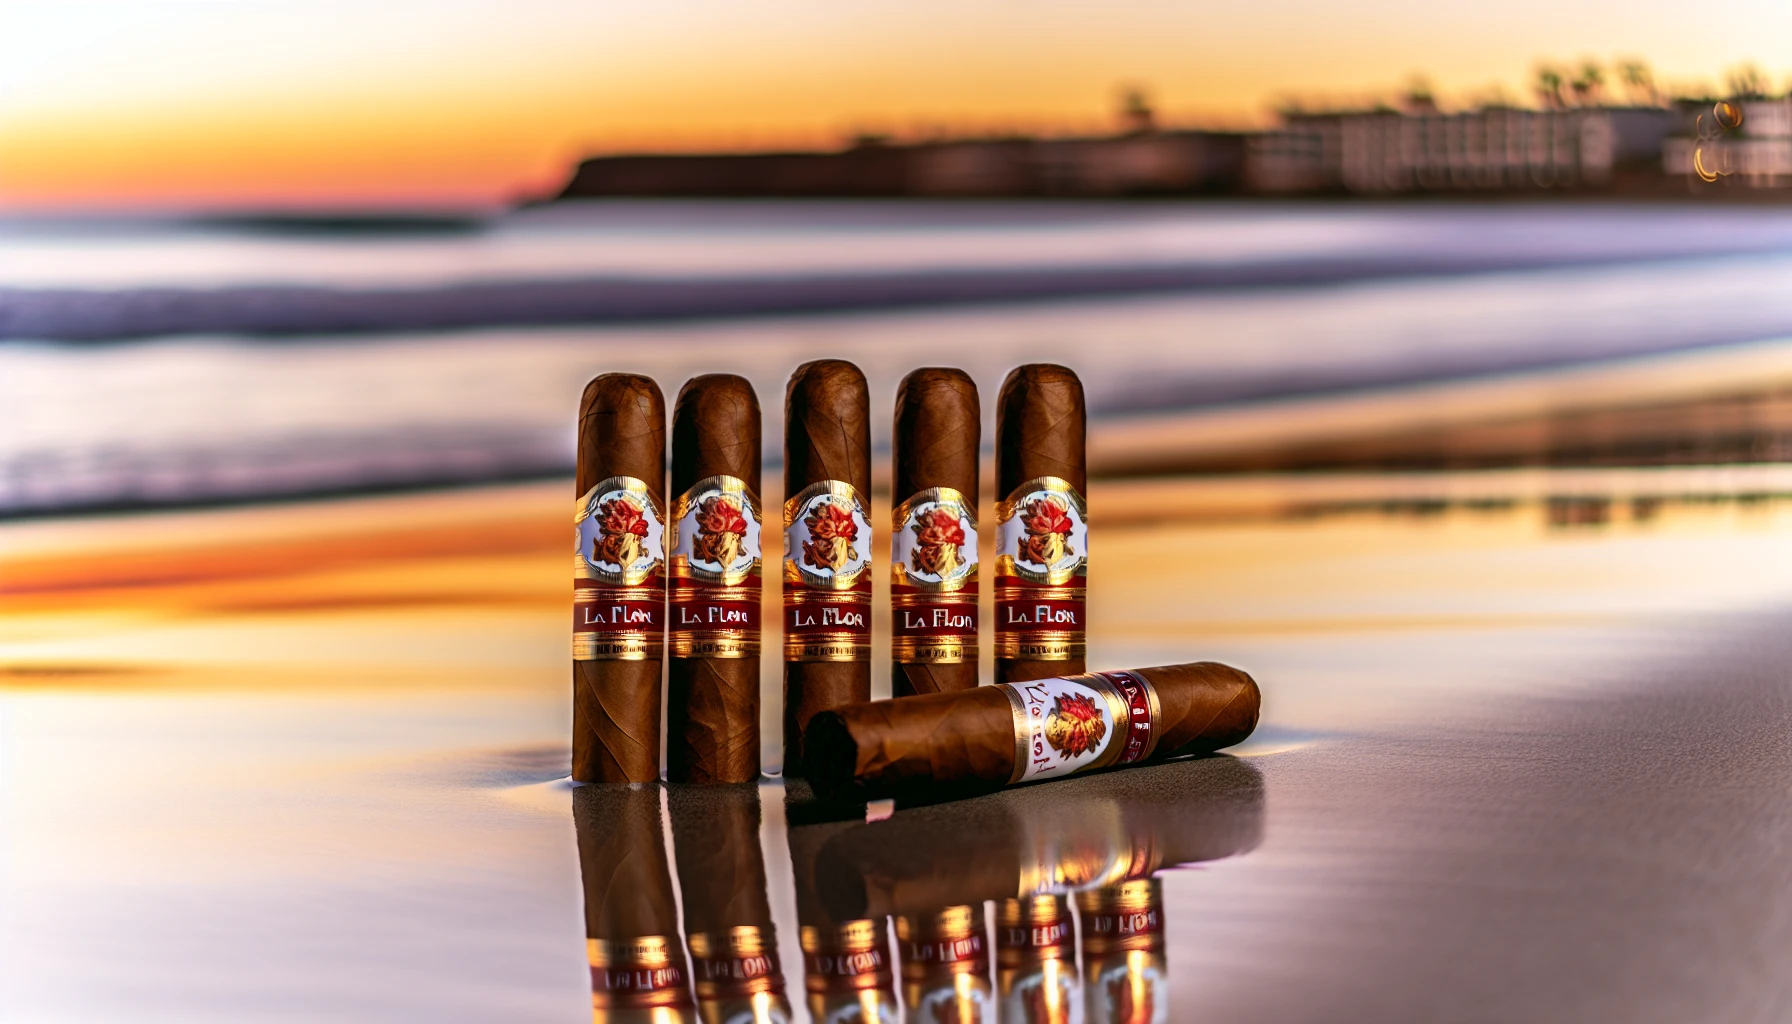 Coronado beach with La Flor Dominicana cigars